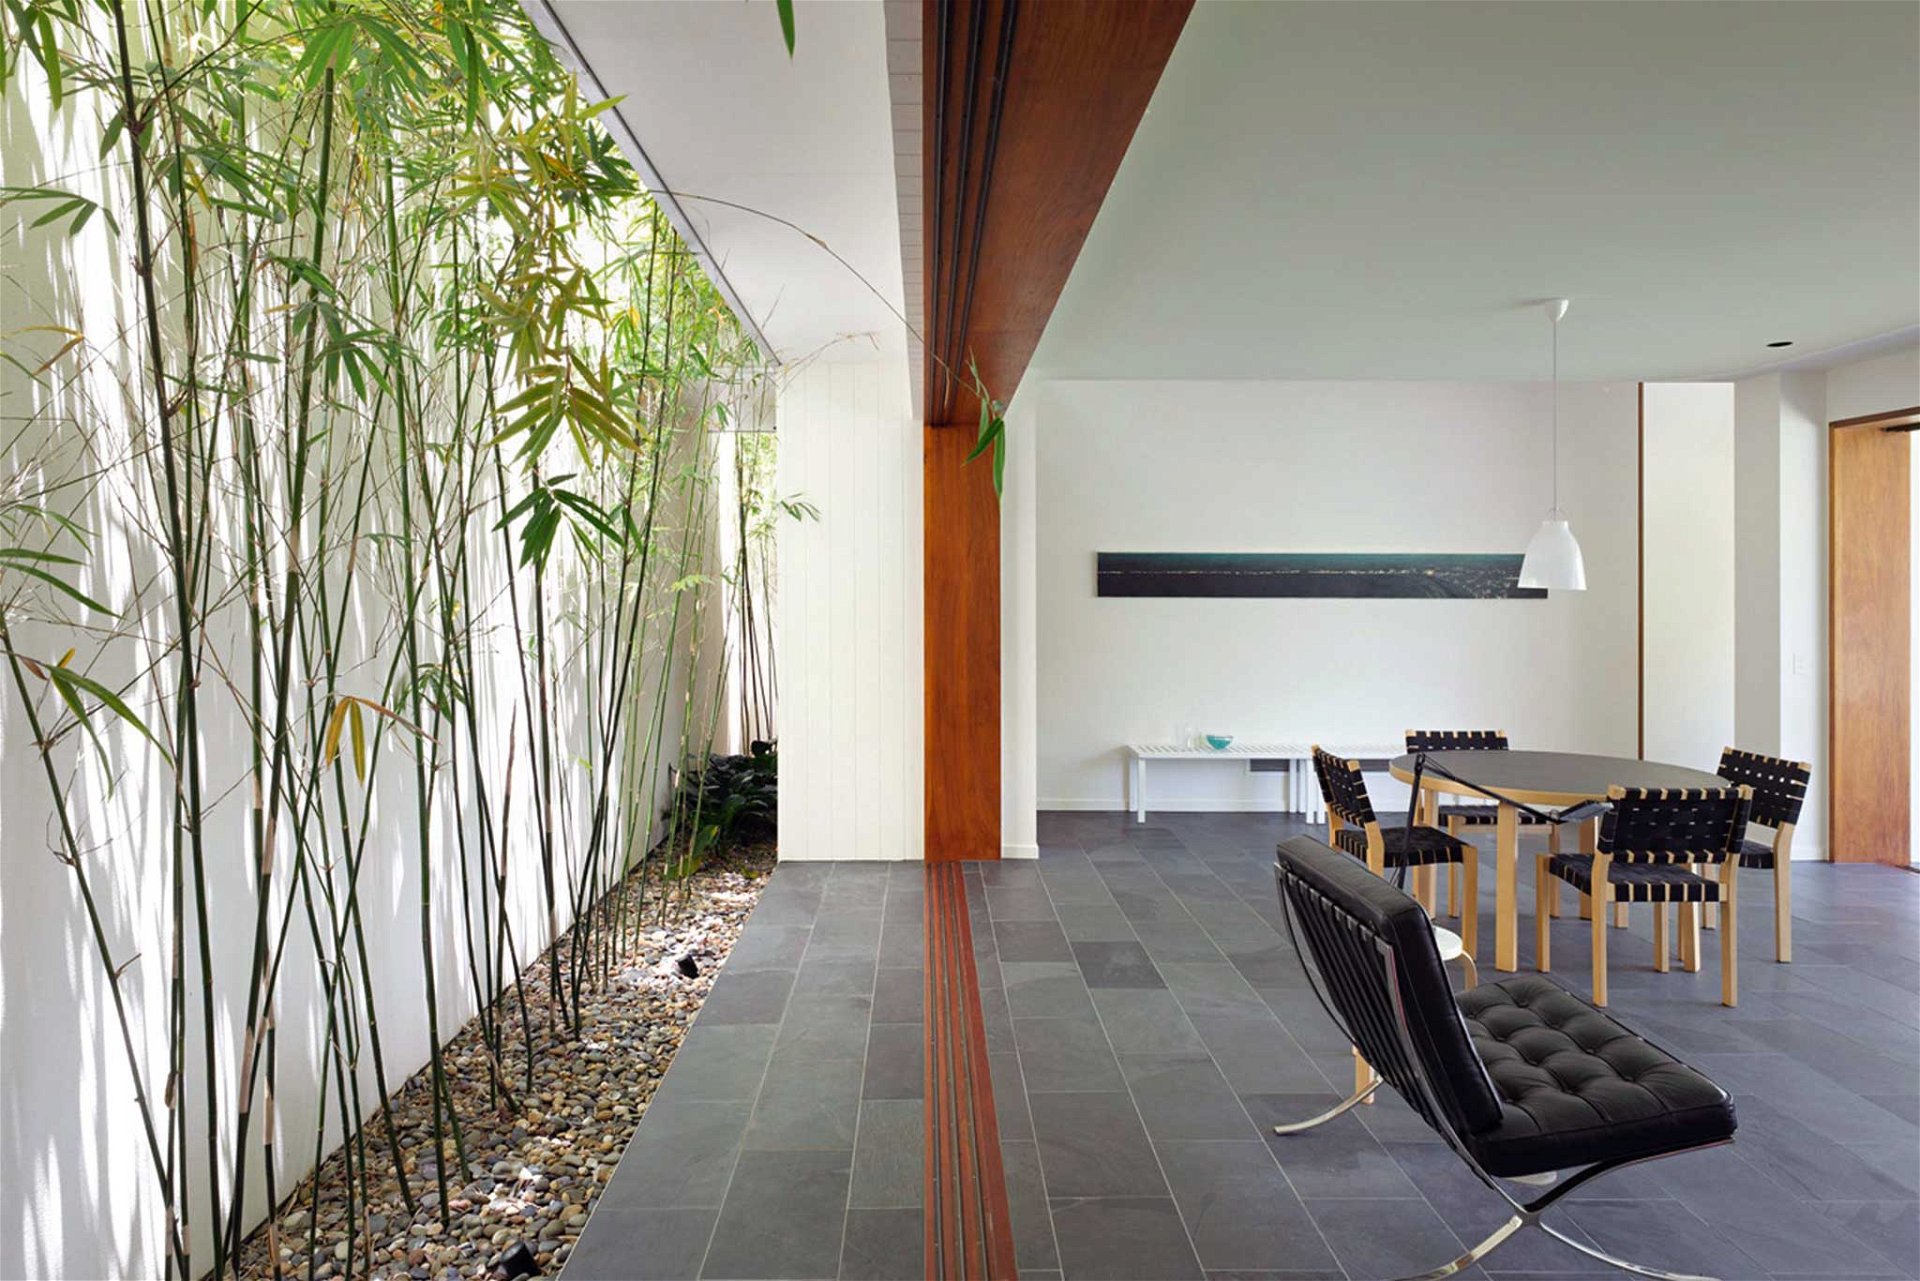 Der australische Architekt Shane Plazibat hat schon Wohnhäuser in London, Hongkong und Down Under geplant. Das Fig Tree Pocket House am Stadtrand von Brisbane blickt auf der einen Seite in einen großen Feigengarten, während auf der anderen Seite ein schmales Bambusatrium vor die Wohnzimmerrückwand eingeschnitten ist. plazibat.com.au